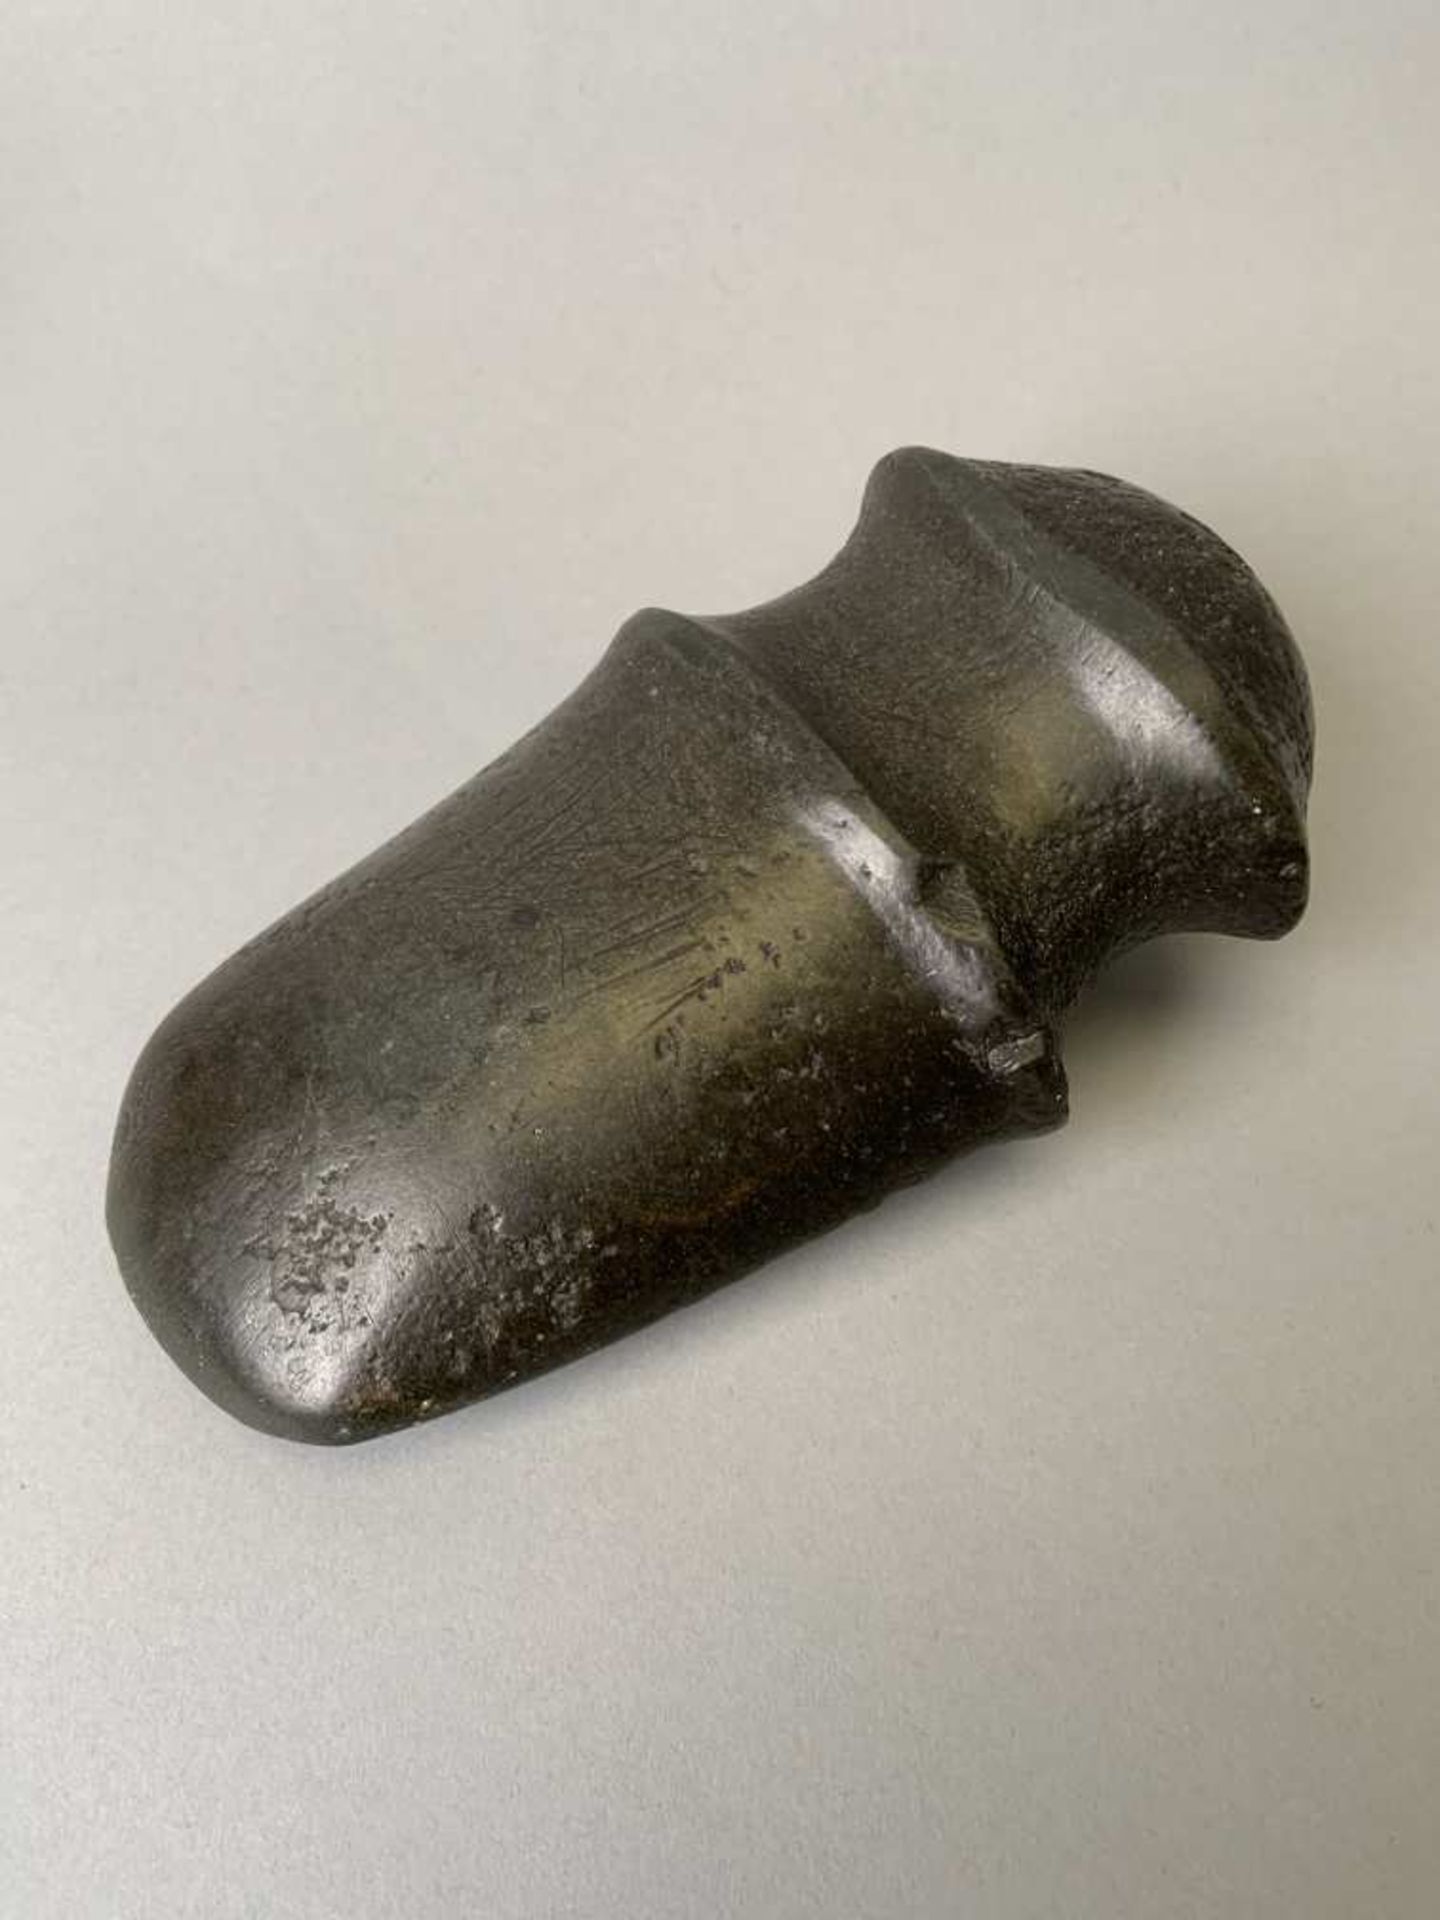 Imposante hache en pierre noire. Largeur 16,5 cm. Probablement utilisée comme arme, un manche y